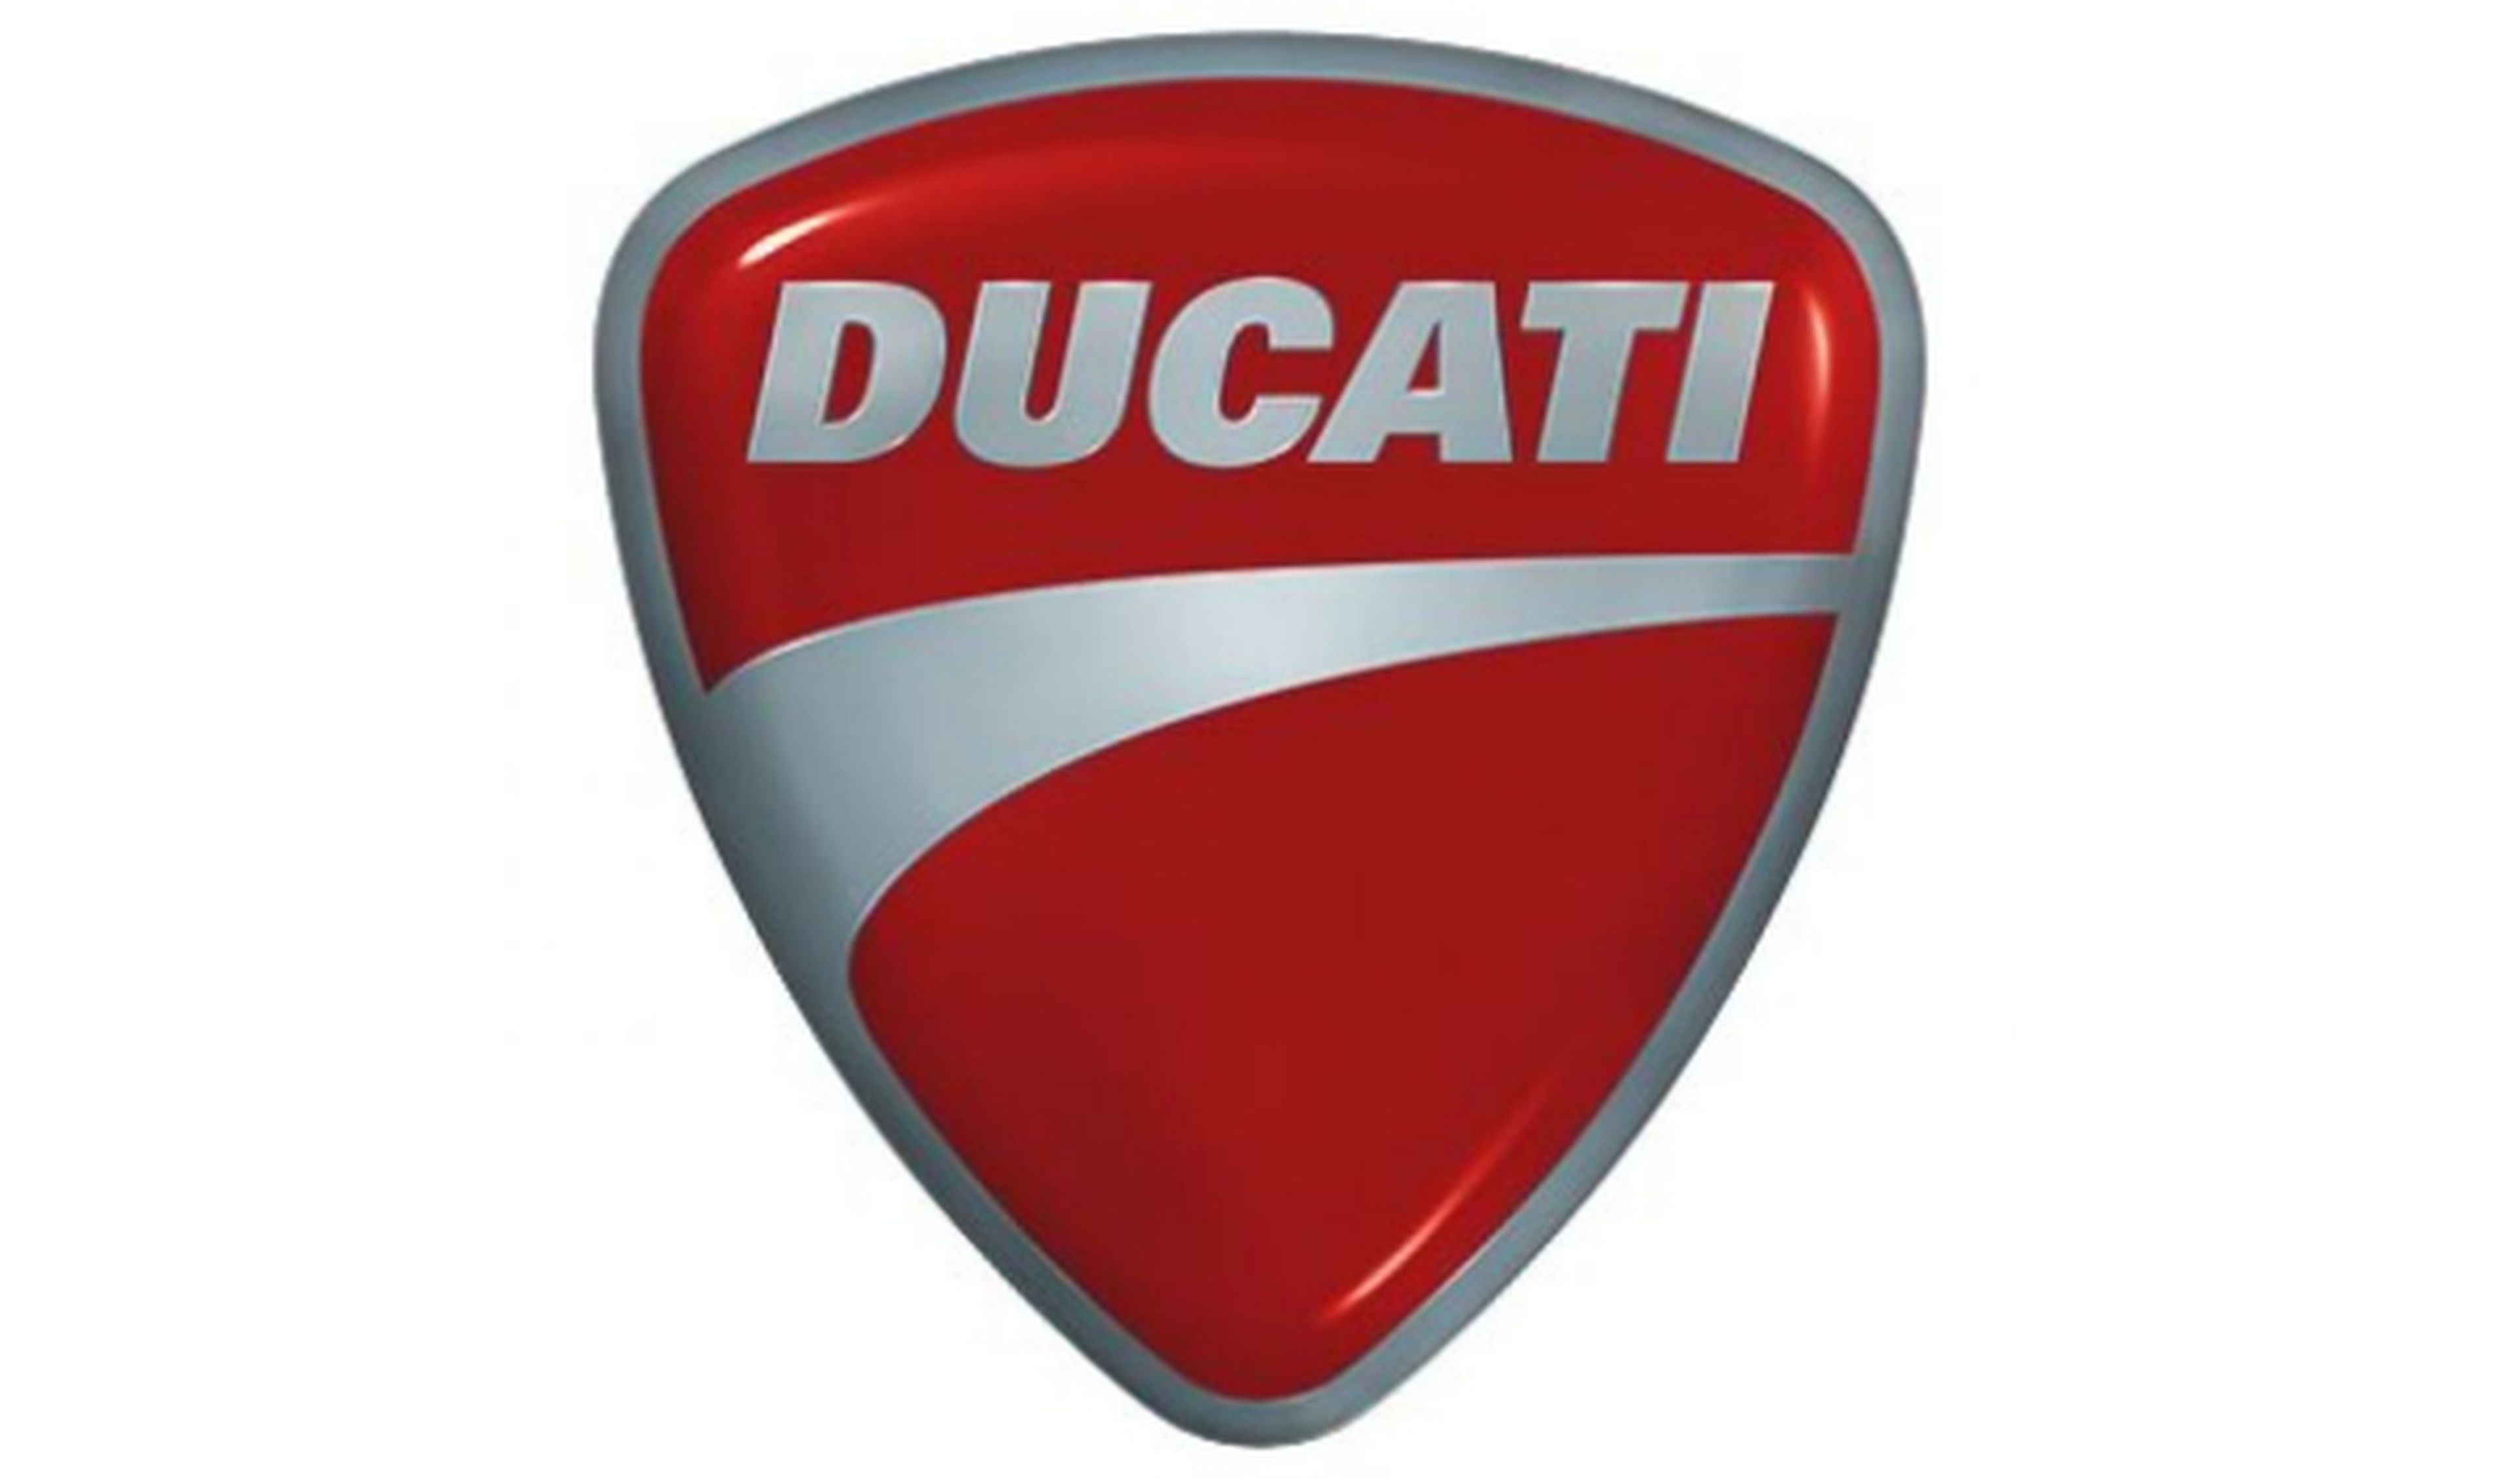 Audi compra Ducati